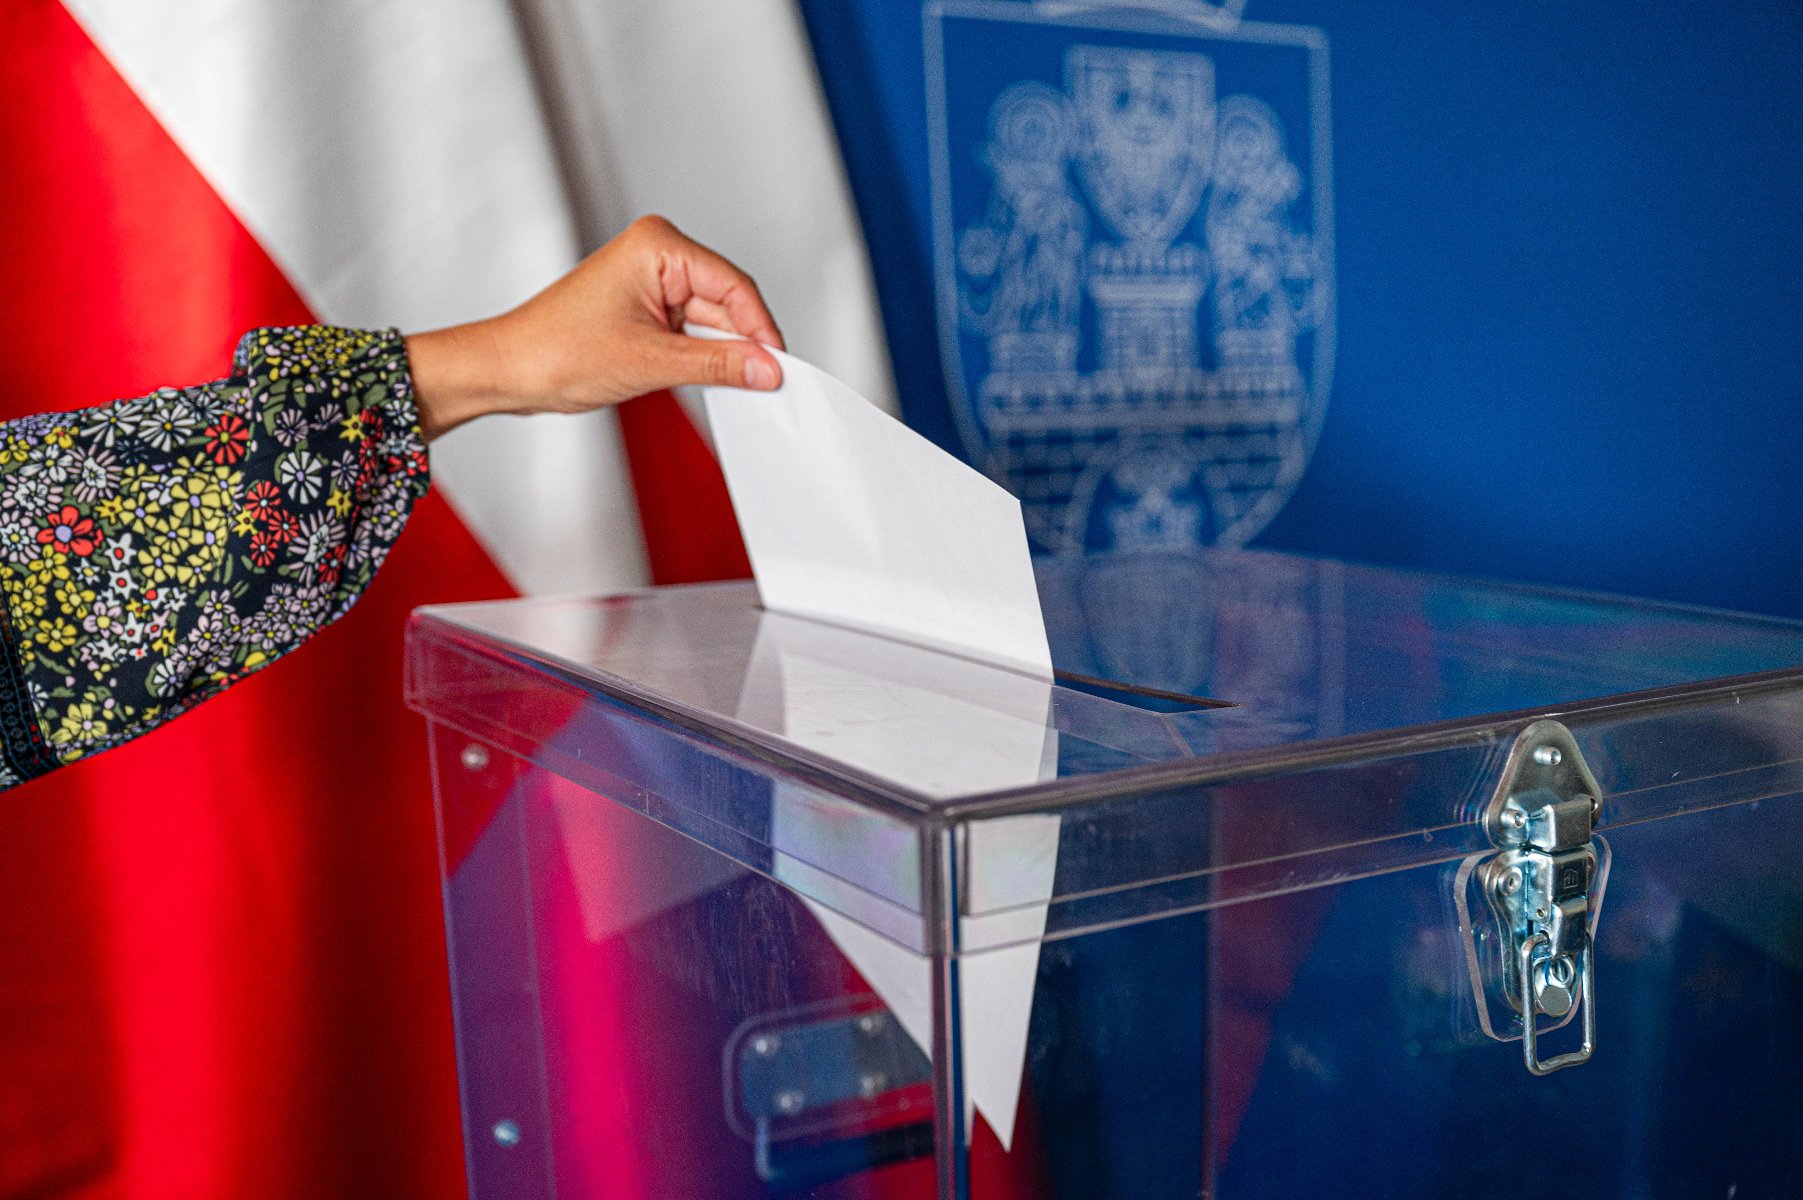 Na zdjęciu widać urnę wyborczą oraz rękę, która wrzuca do urny kartę do głosowania. W tle herb Poznania oraz flagi Polski. - grafika artykułu